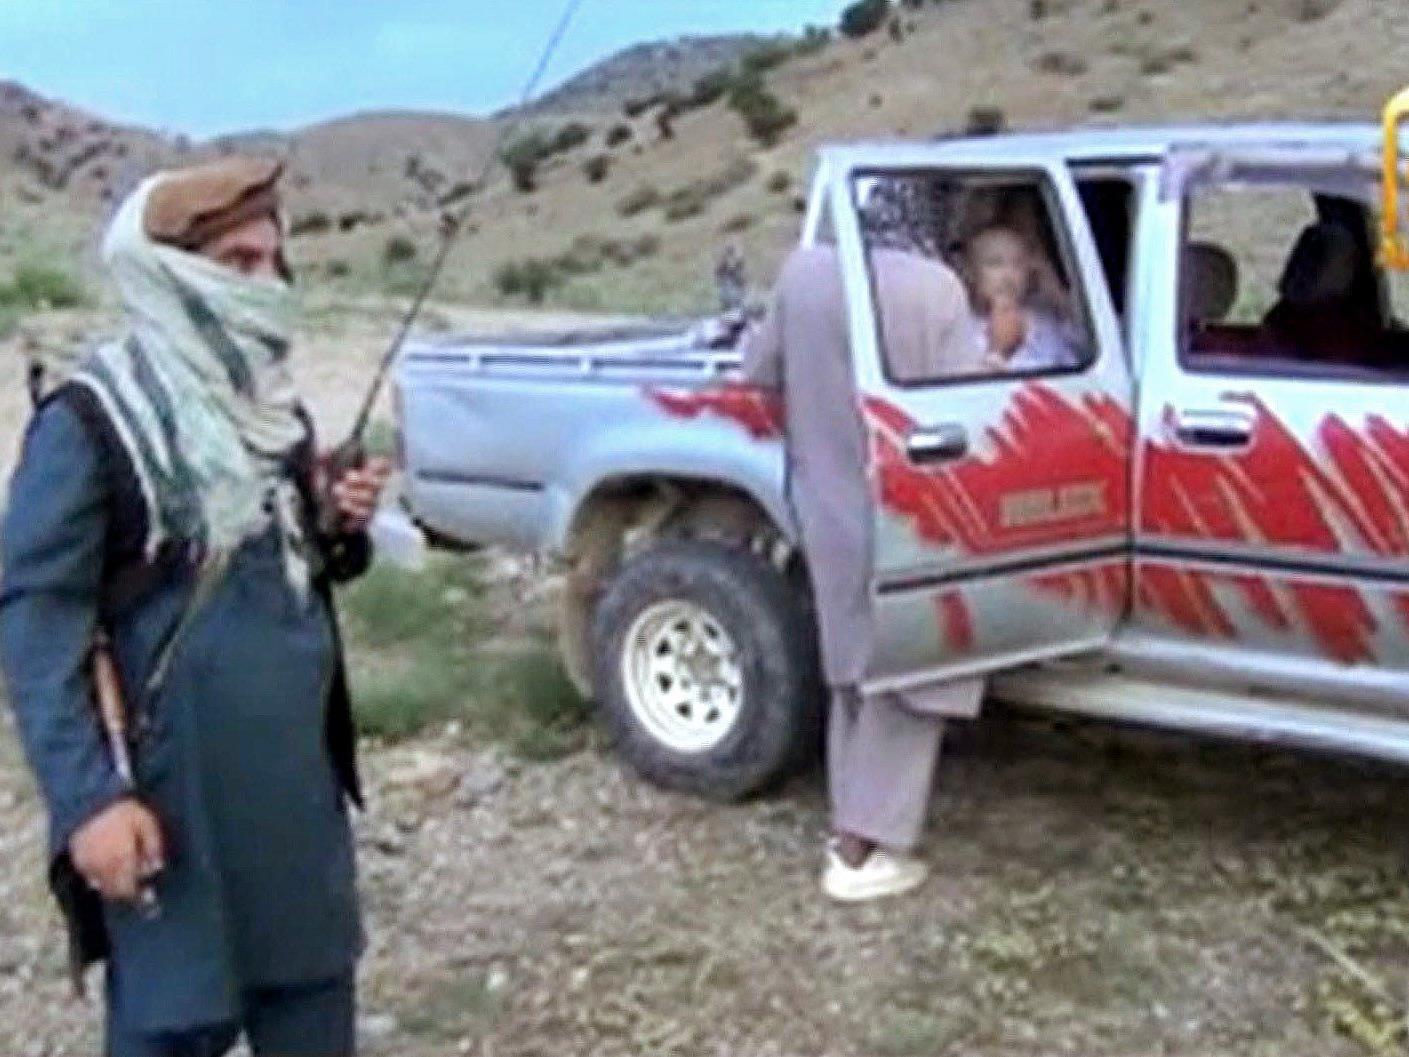 Bergdahl war am Samstag in der Provinz Chost übergeben worden. Im Gegenzug ließen die USA fünf Taliban-Funktionäre frei.